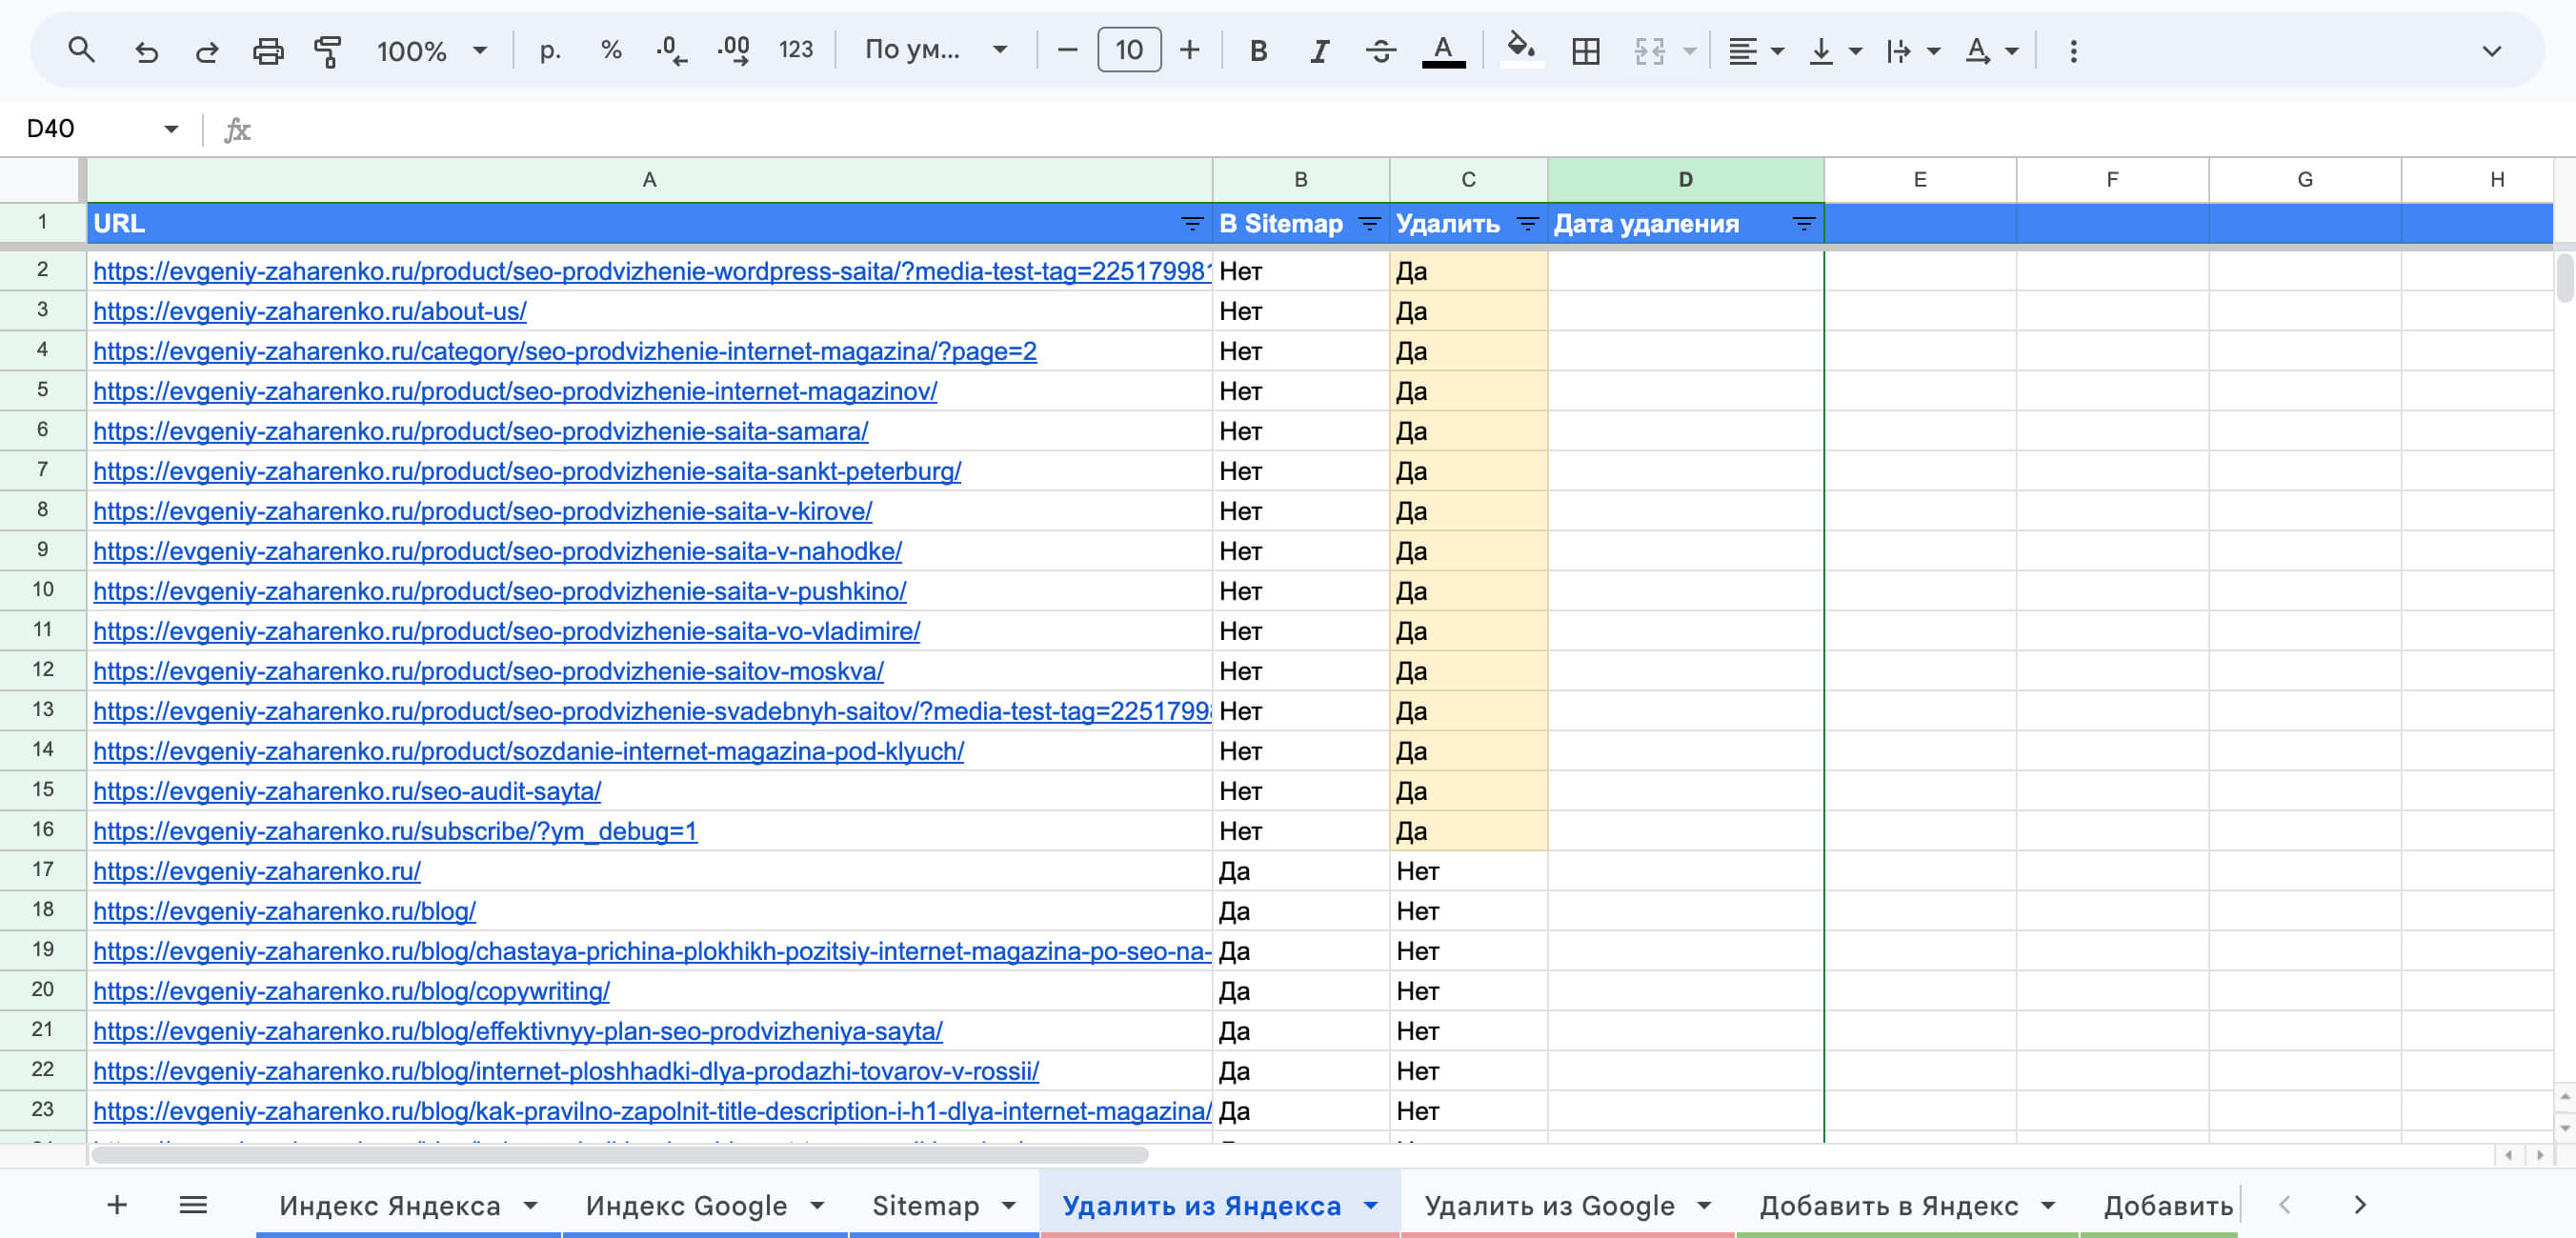 Пример таблицы оптимизации поискового индекса Яндекса и Гугла